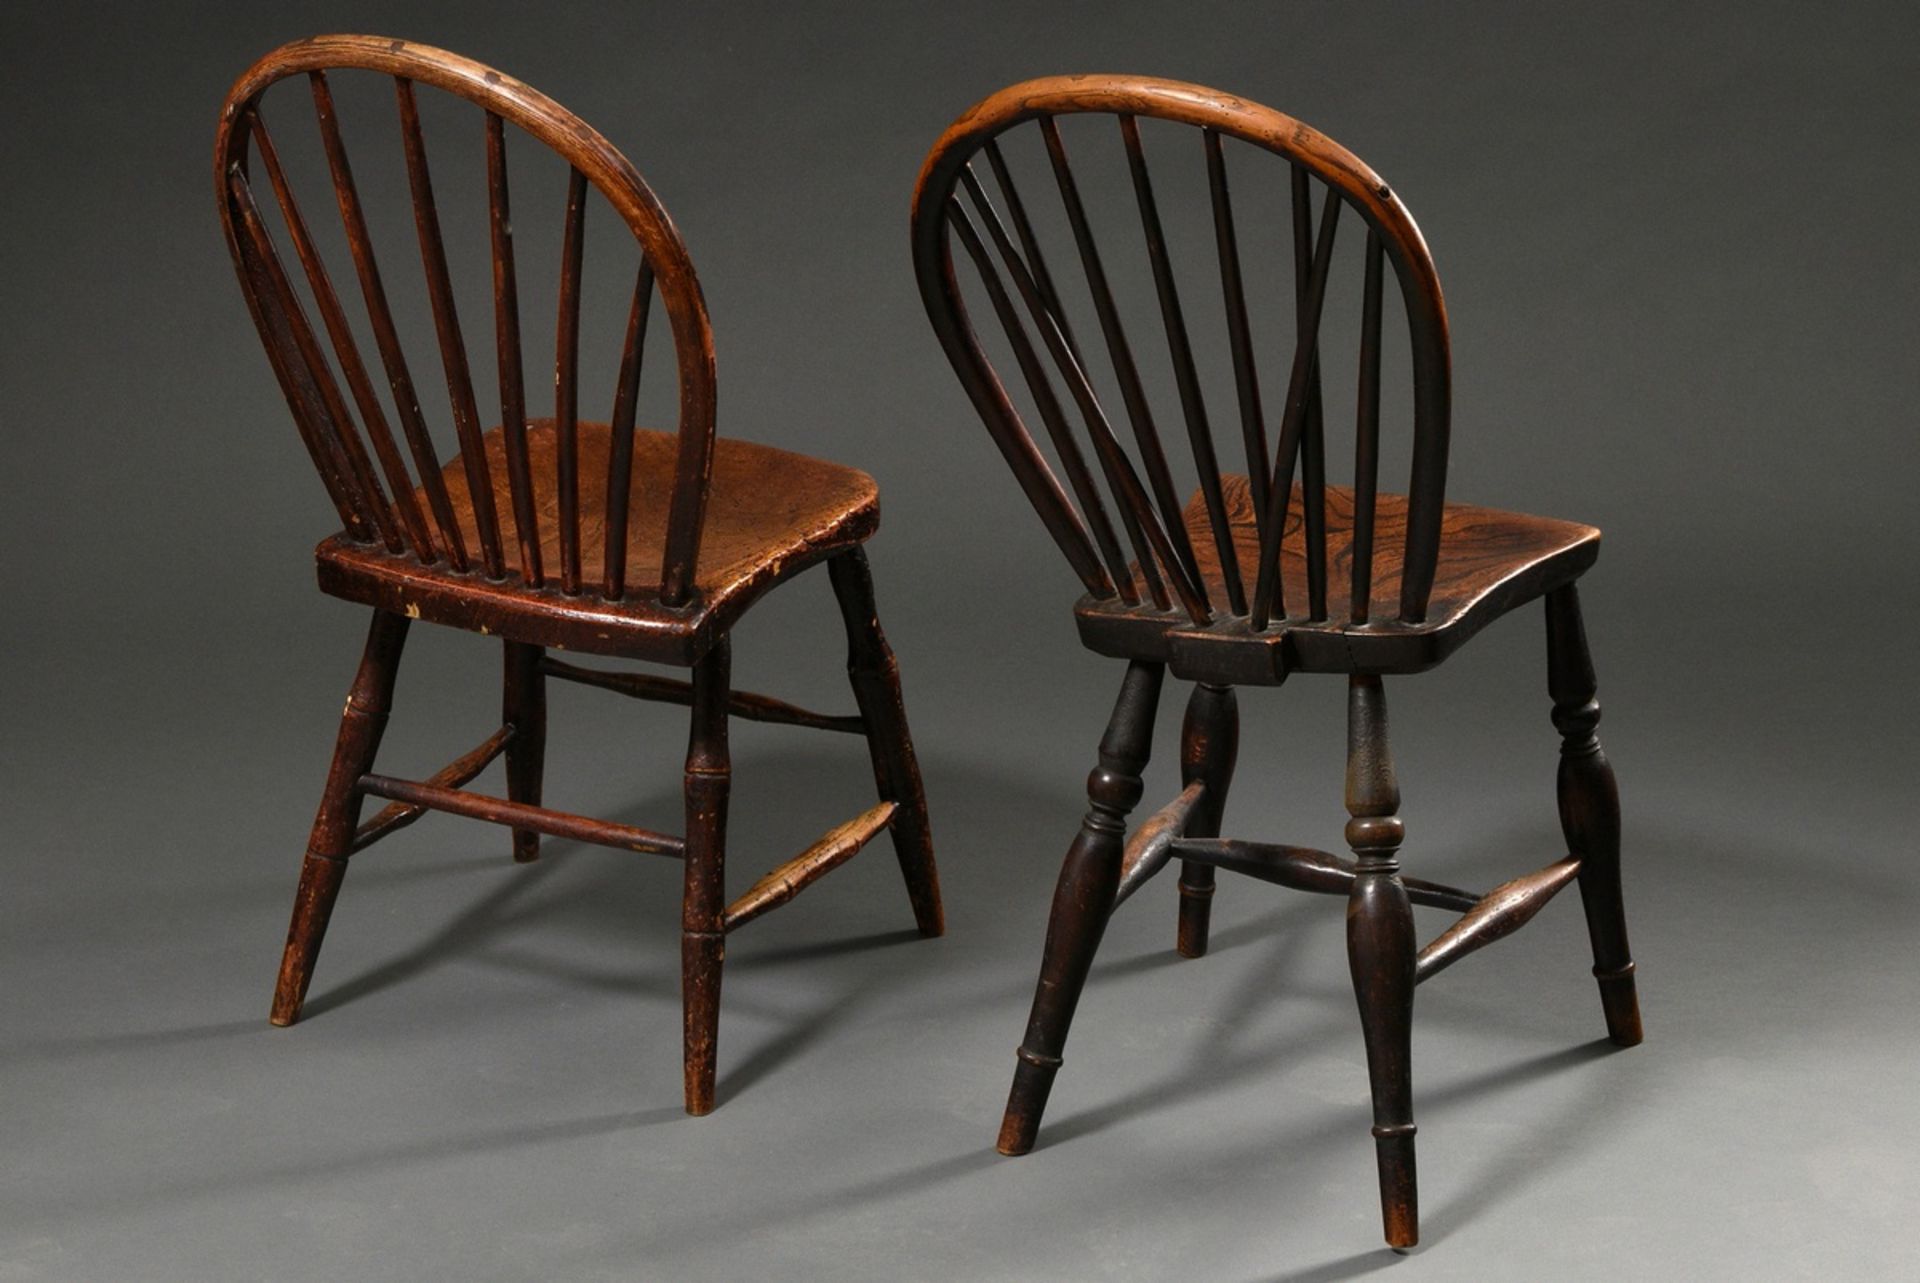 2 Diverse englische Windsor Stühle mit Spindle-Back, Eiche und Esche, 19.Jh., schöne Patina, H. 43/ - Bild 4 aus 5